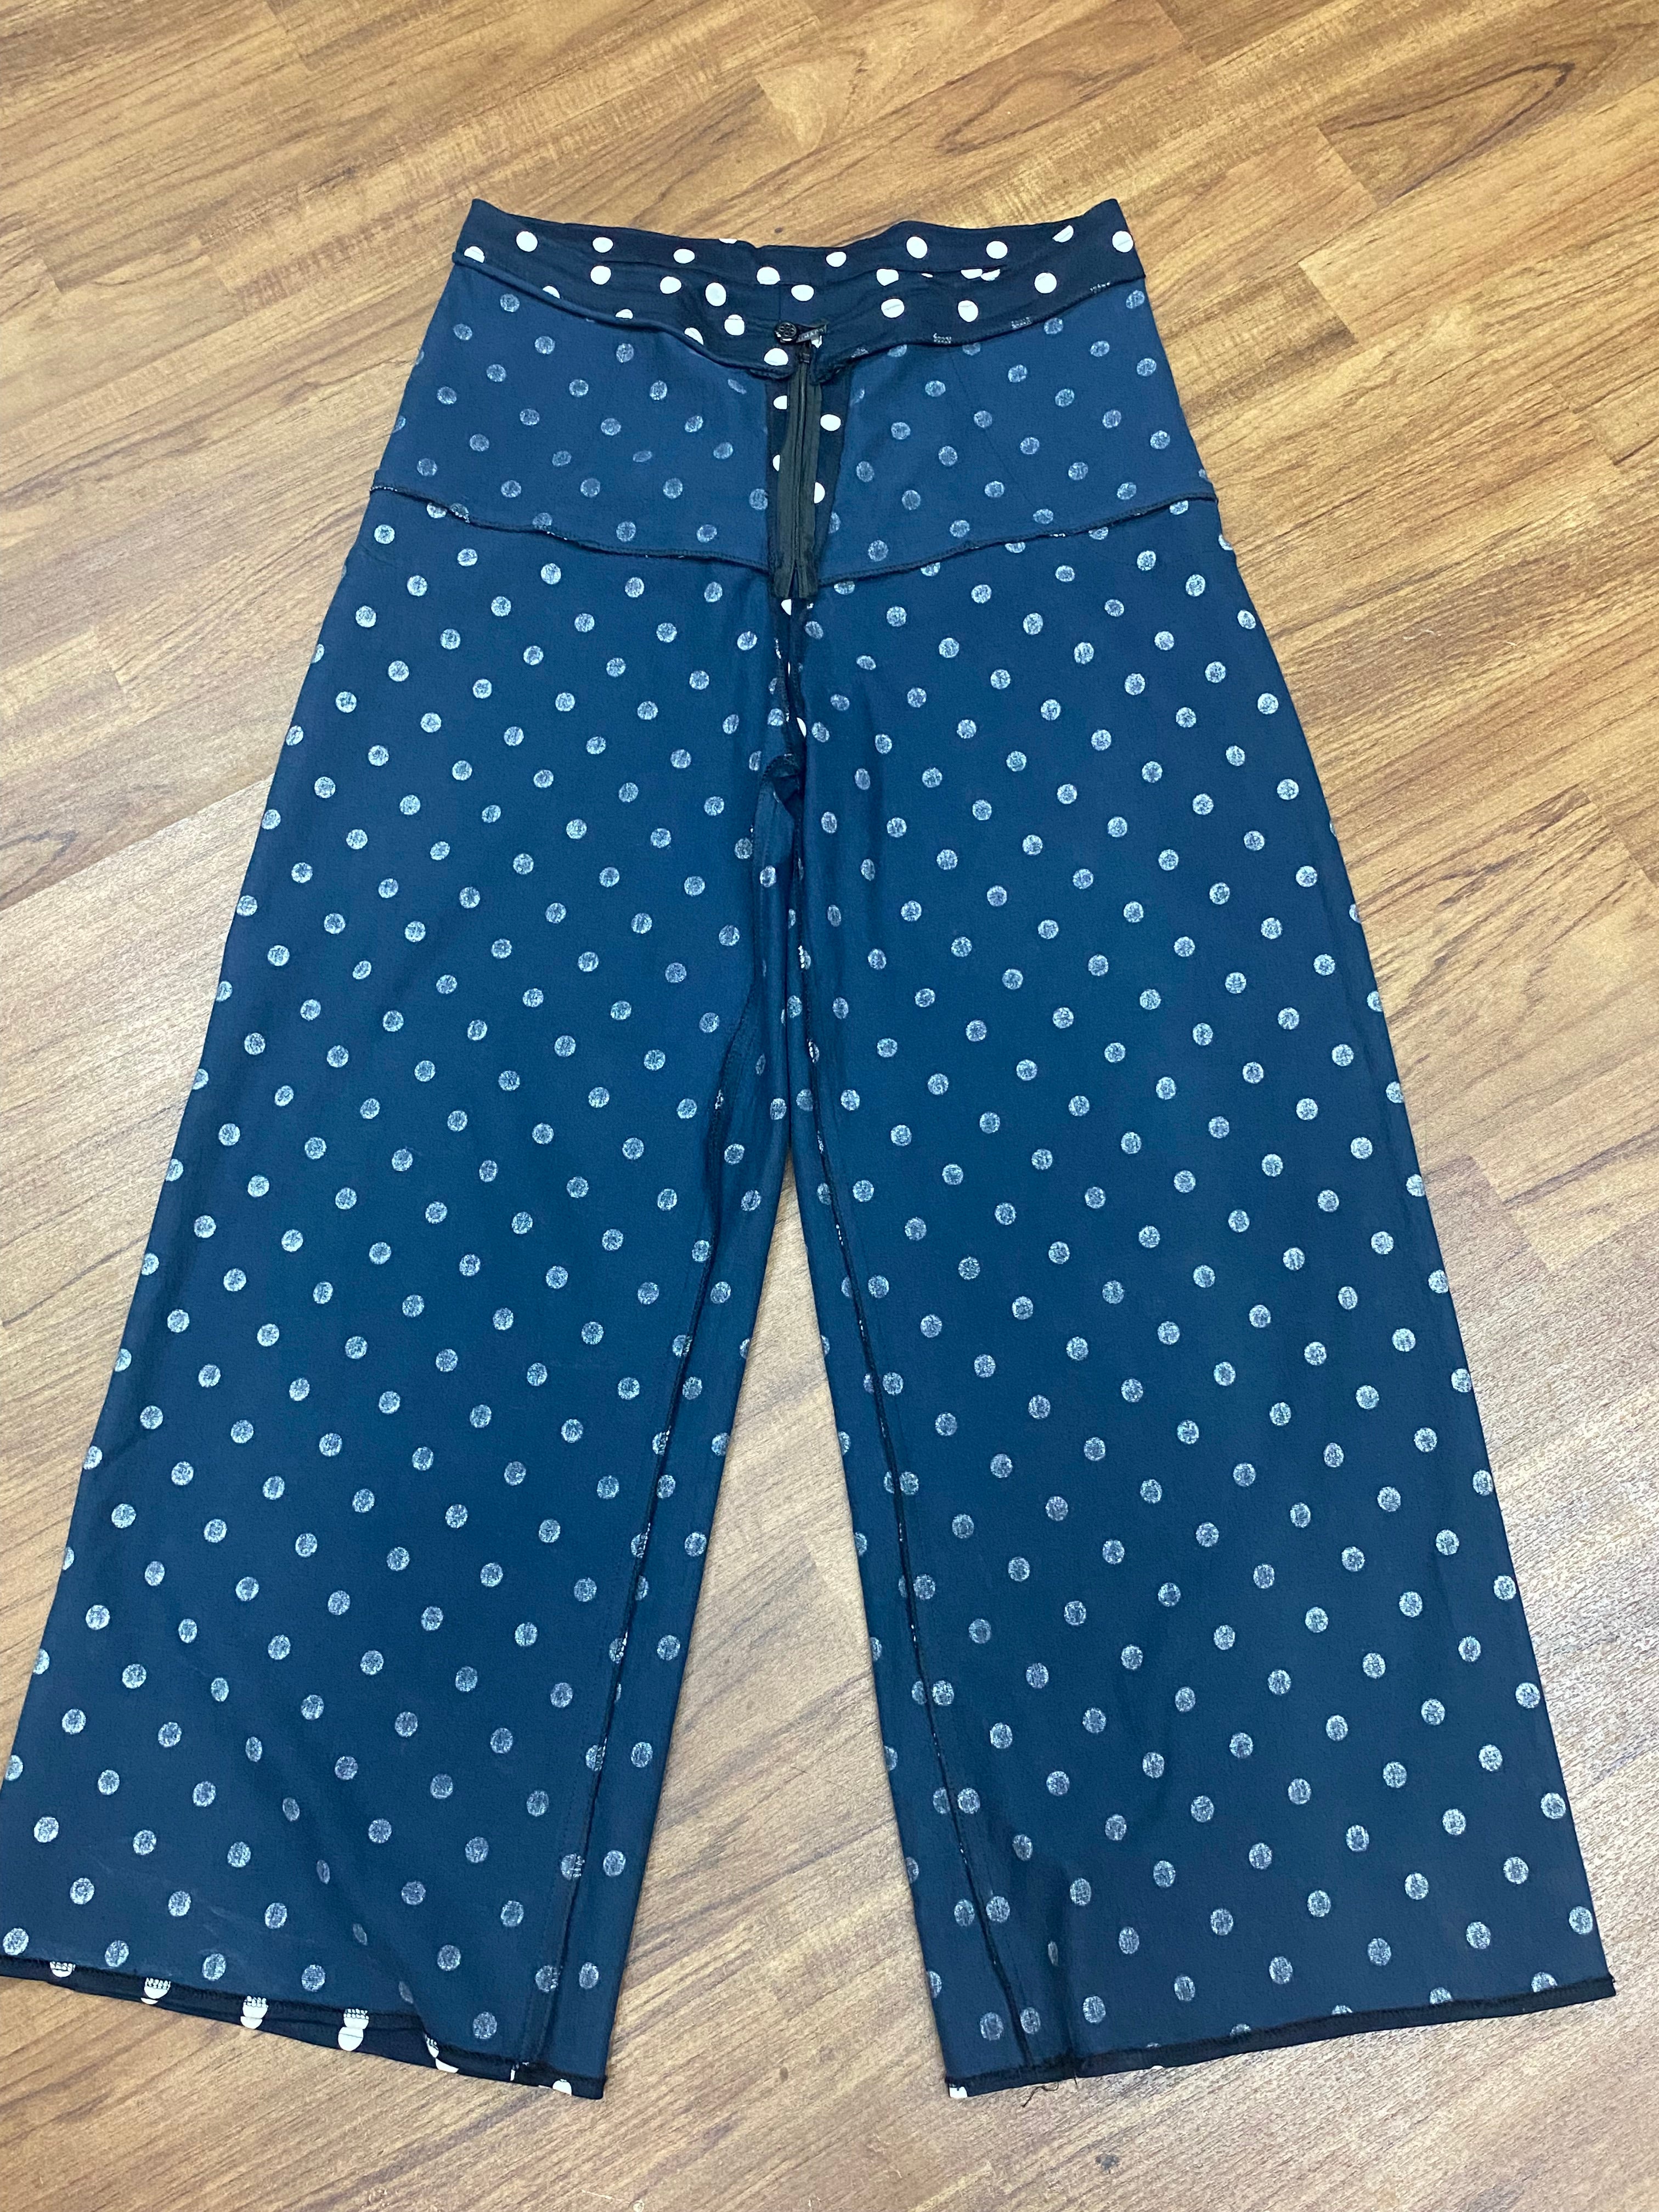 Vintage Stoffhose für Damen Gr.42, blau-weiß mit Punkte